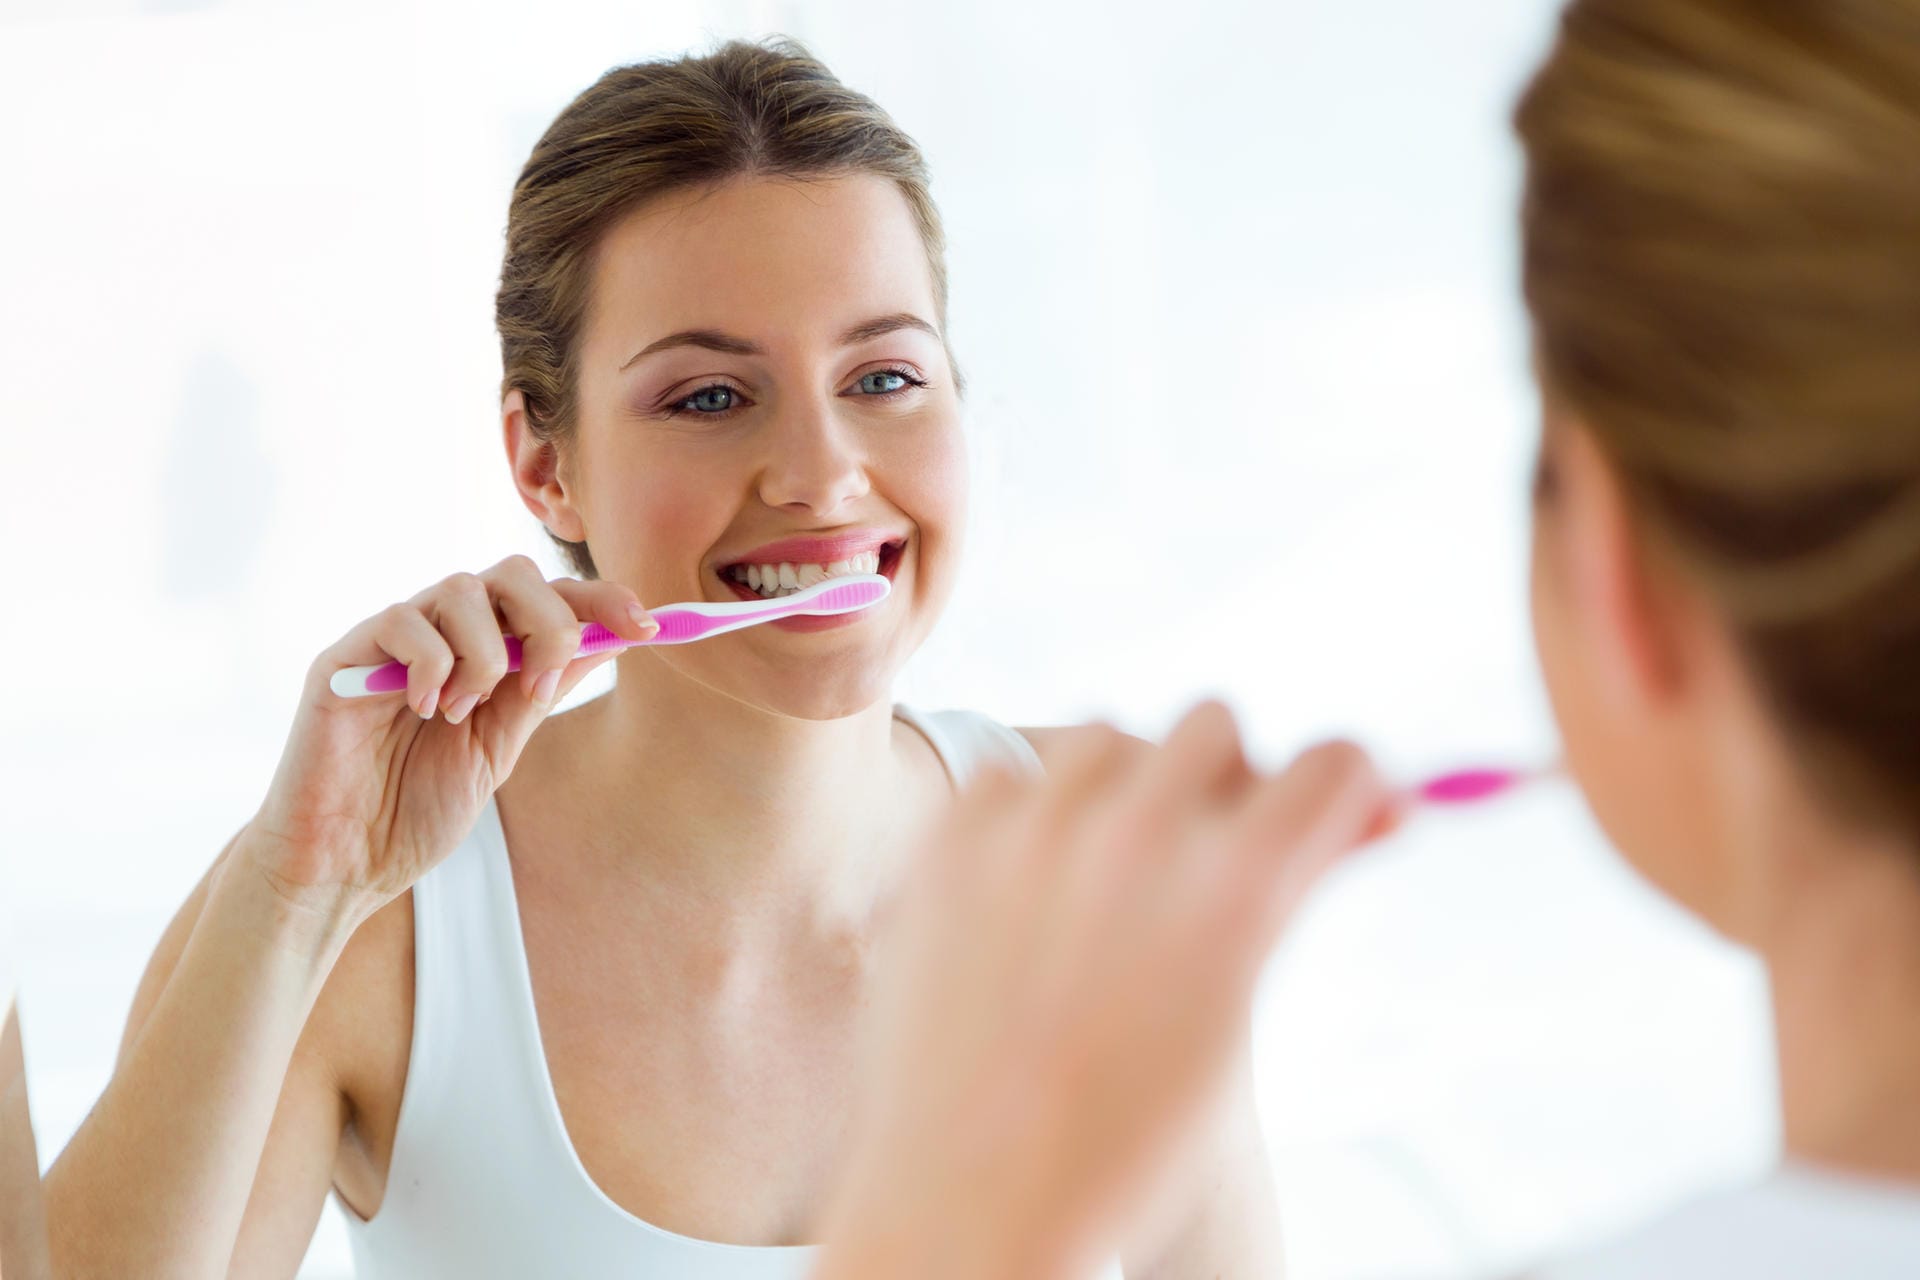 Tipp Nr. 3: Eine gute Mundhygiene schützt ebenfalls vor Alzheimer. Eine Studie der Universität von South Carolina hat ergeben, dass Parodontose bei Menschen unter 35 in späteren Jahren die Wahrscheinlichkeit von Alzheimer um das Vierfache erhöht. Experten vermuten, dass Entzündungen im Mundraum sich auf das Hirn ausweiten können. Jean Carper: 100 simple things you can do to prevent alzheimer's and age-related memory loss